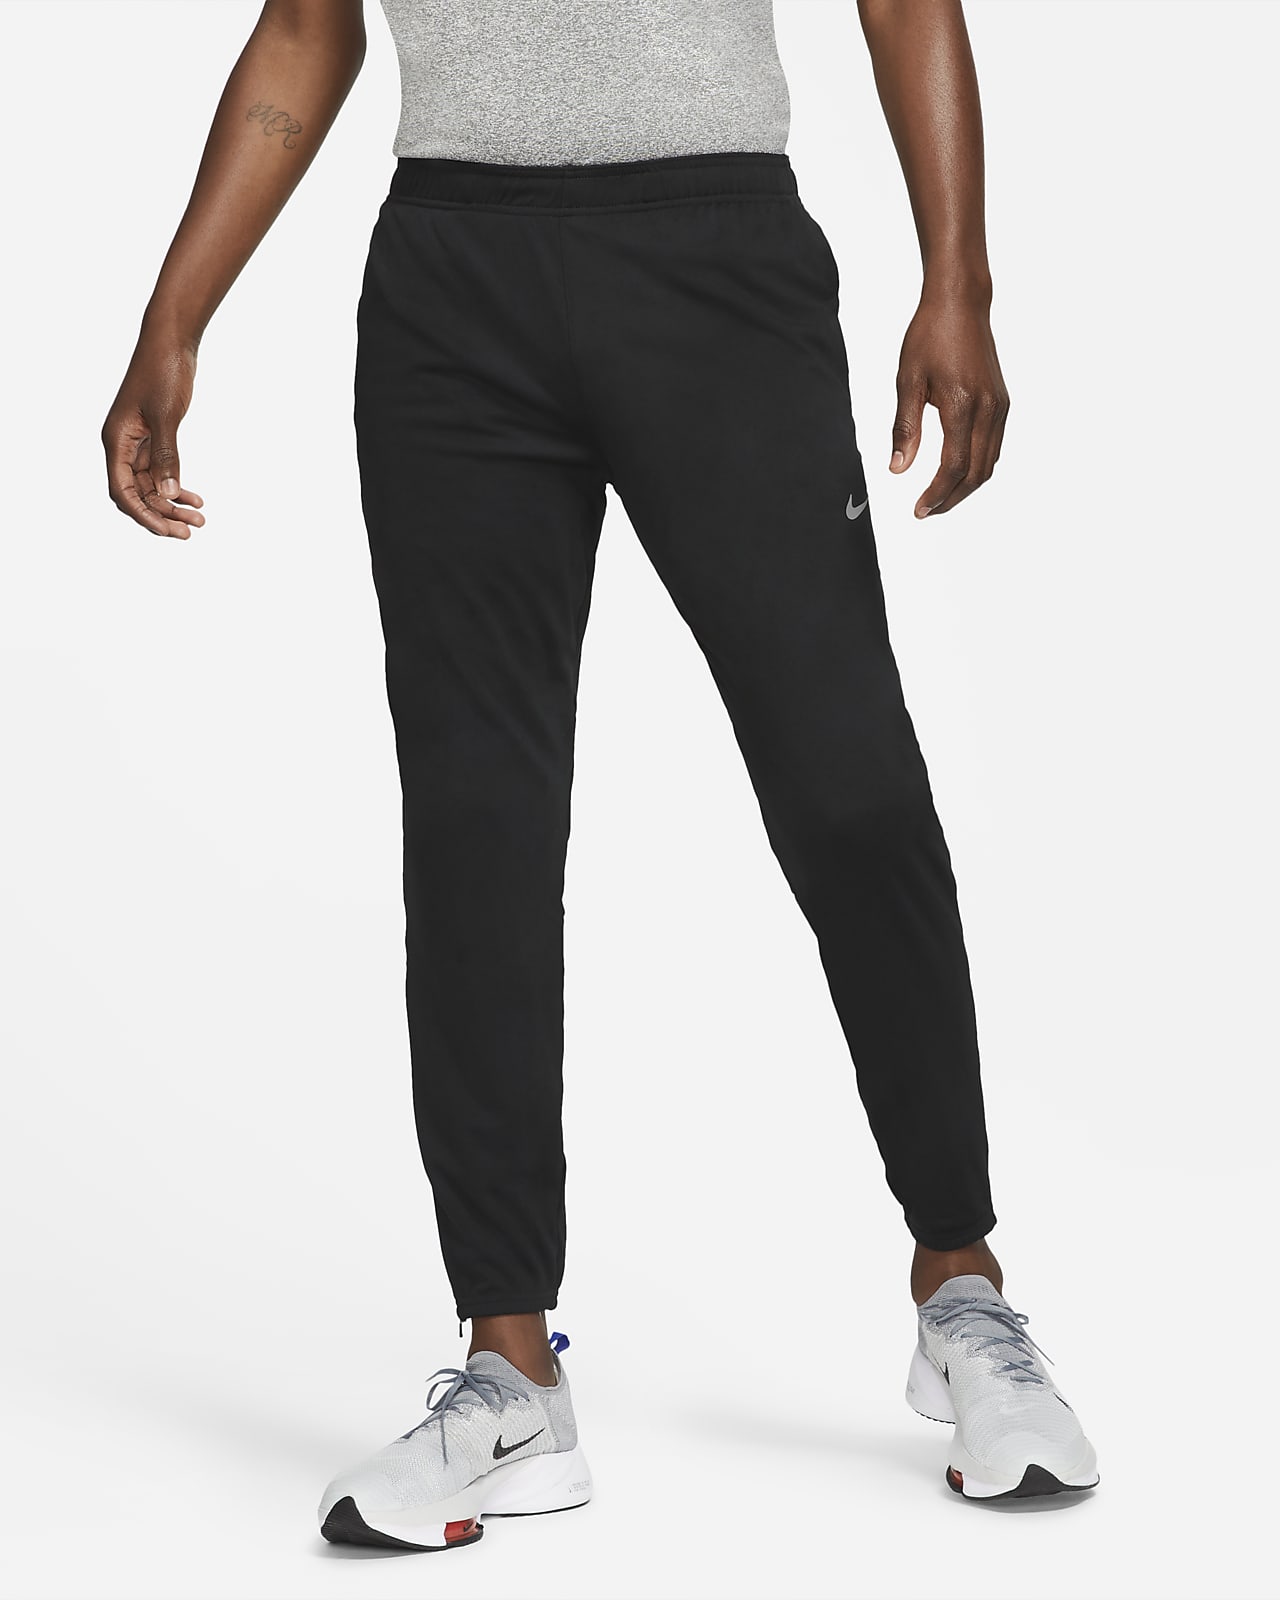 Nike Dri-FIT Challenger 男款針織跑步長褲